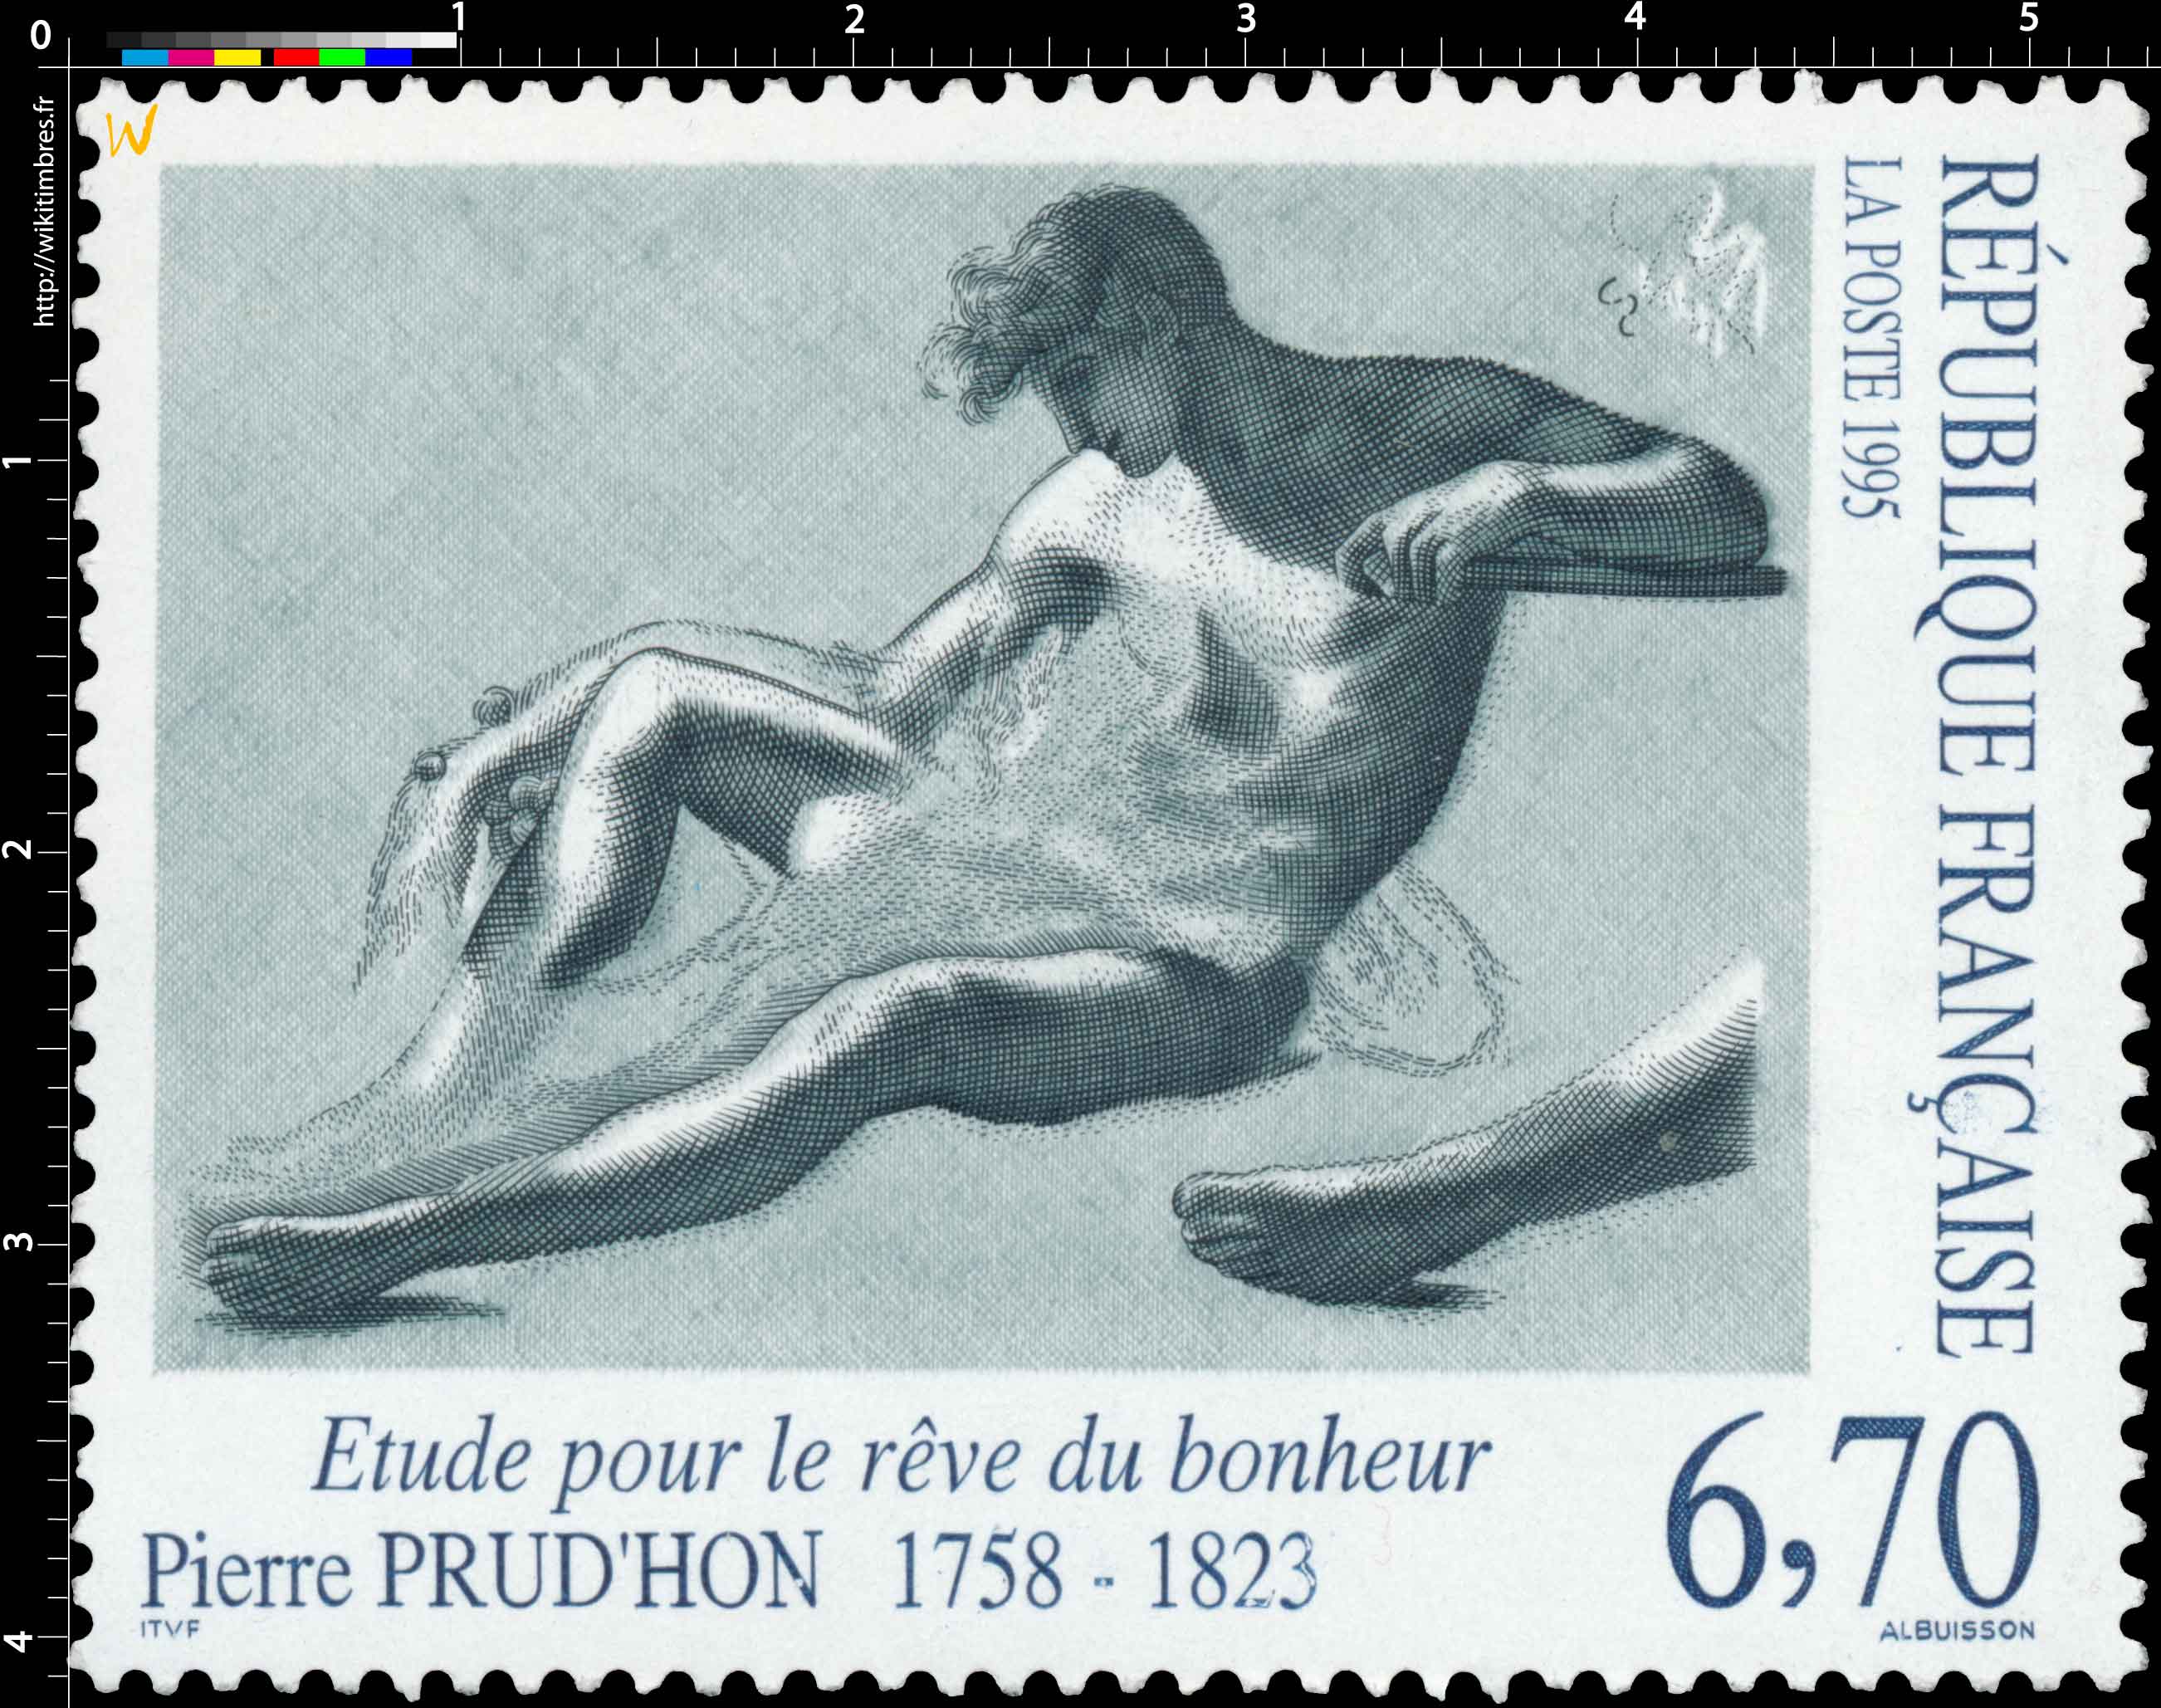 1995 Pierre PRUD'HON (1758-1823) Étude pour le rêve du bonheur